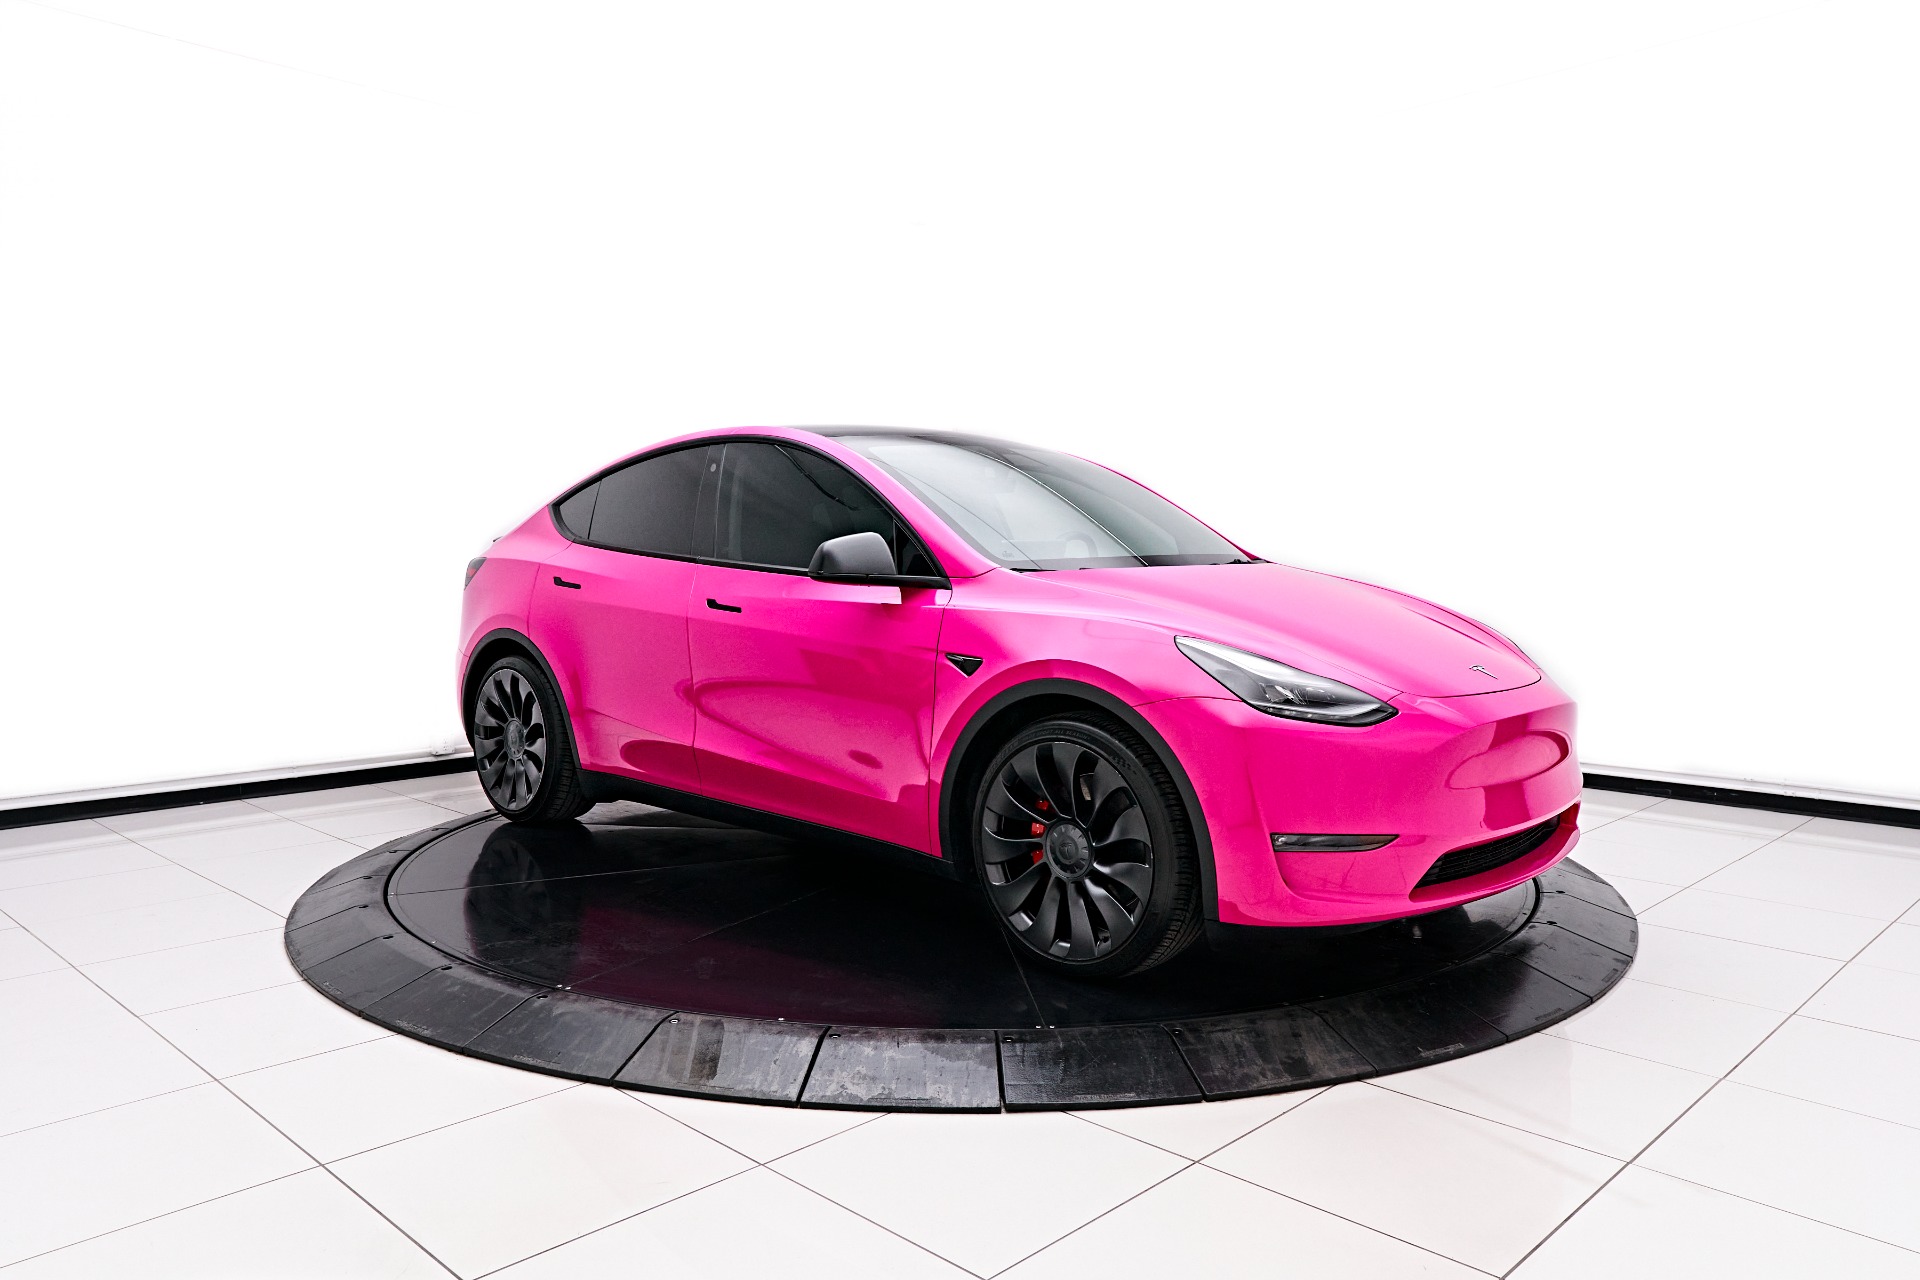 Car Mirror Wiper For Tesla Model S Model X Model Y Model 3 2012